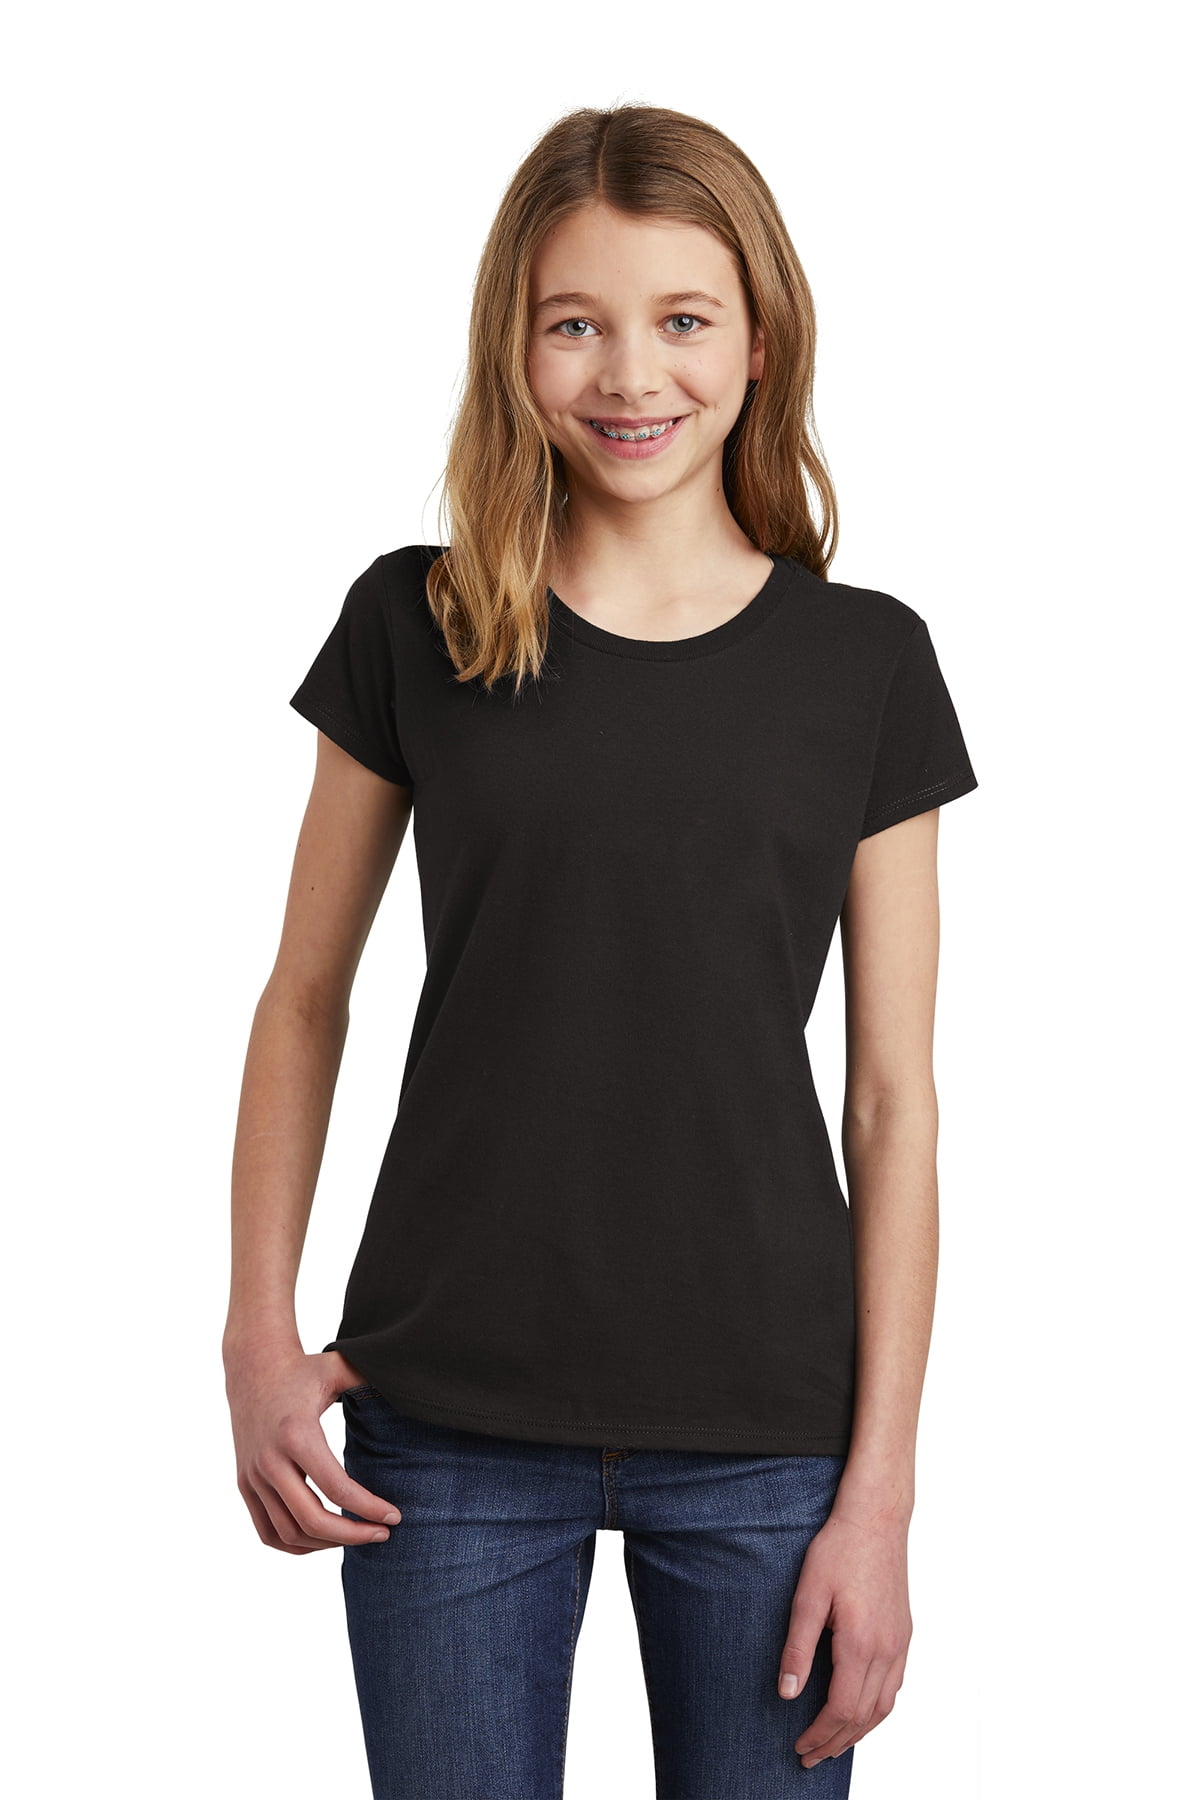 plain black shirt for girls